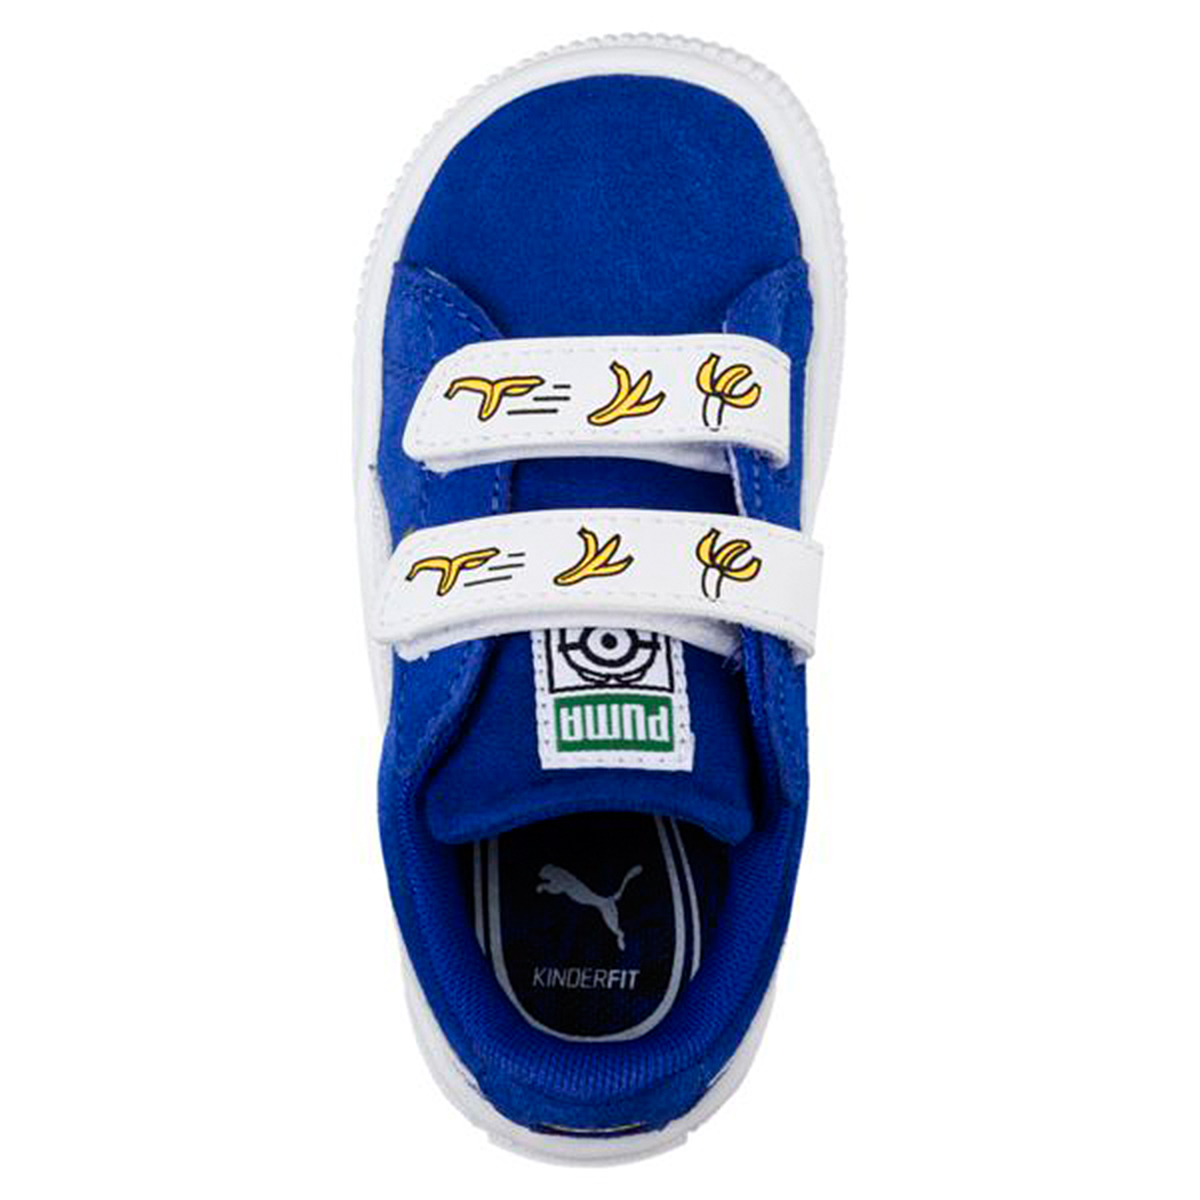 Puma Minions Suede V PS Kinder Sneaker Schuhe 365528 02 blau